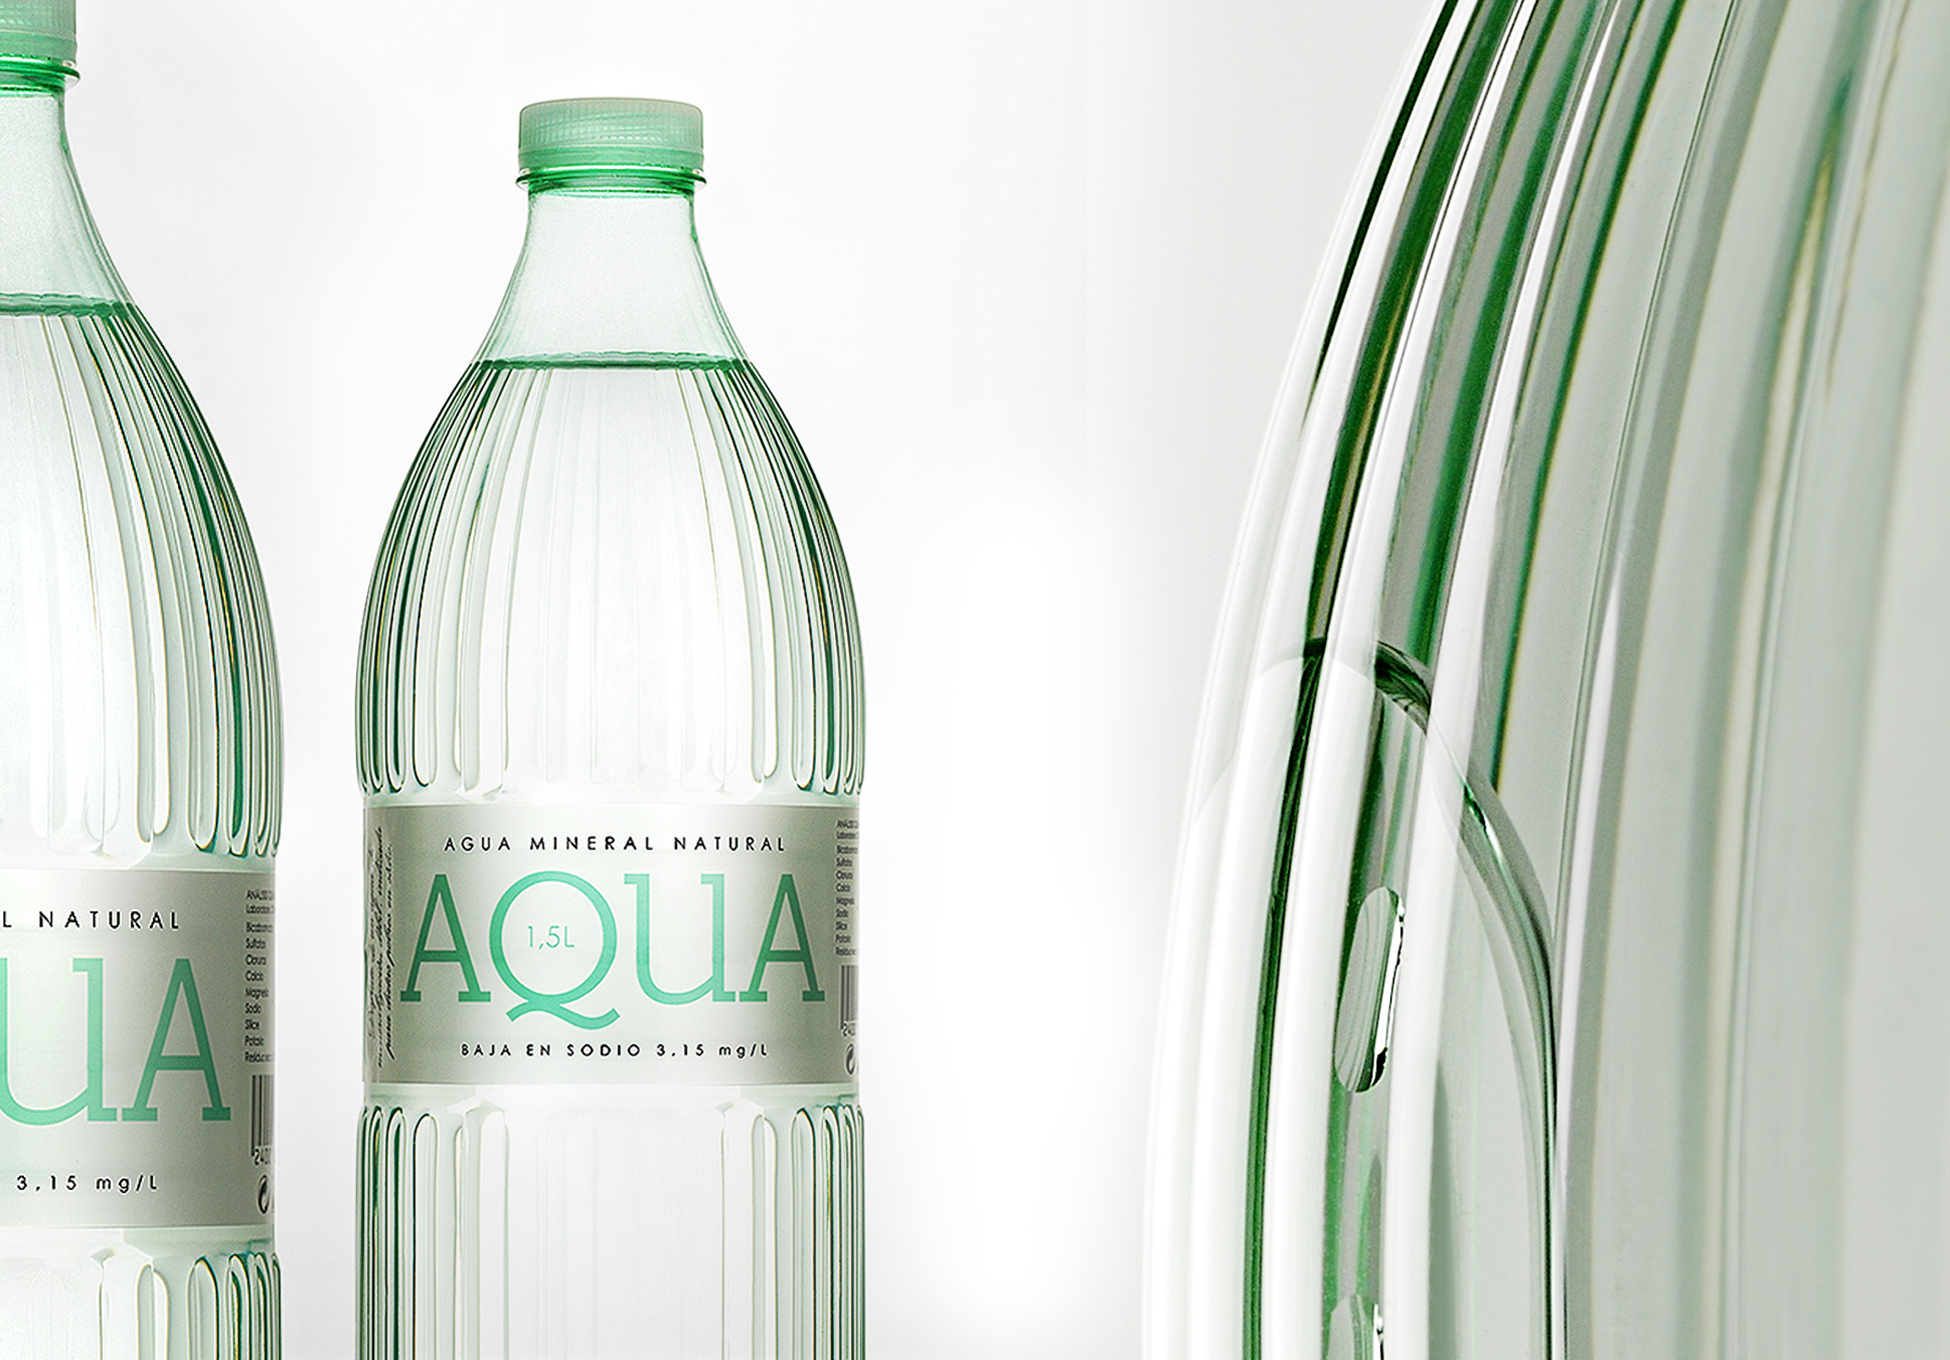 AQUA. Mineral water